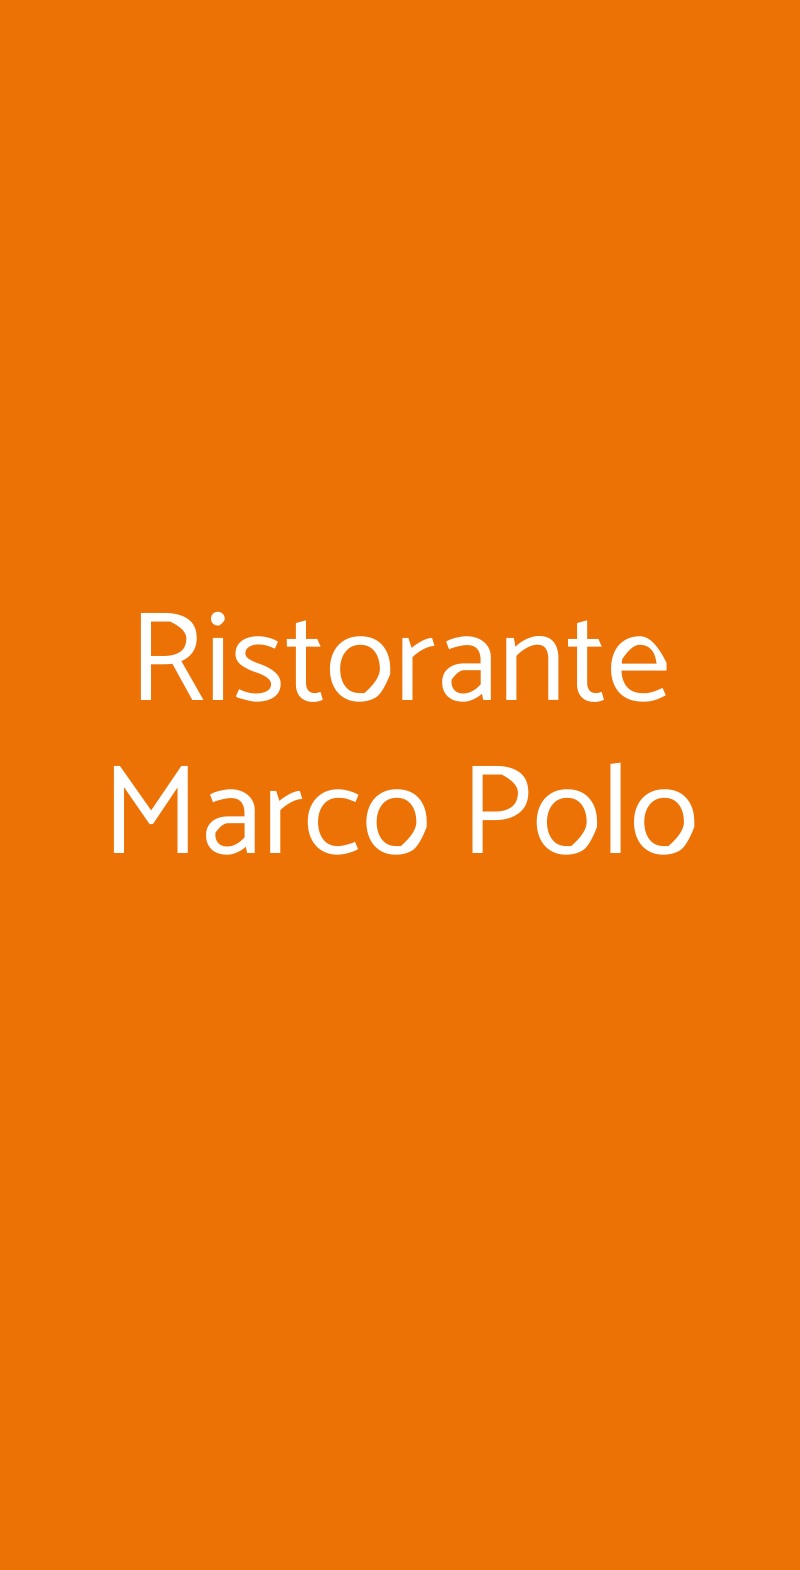 Ristorante Marco Polo Pisa menù 1 pagina